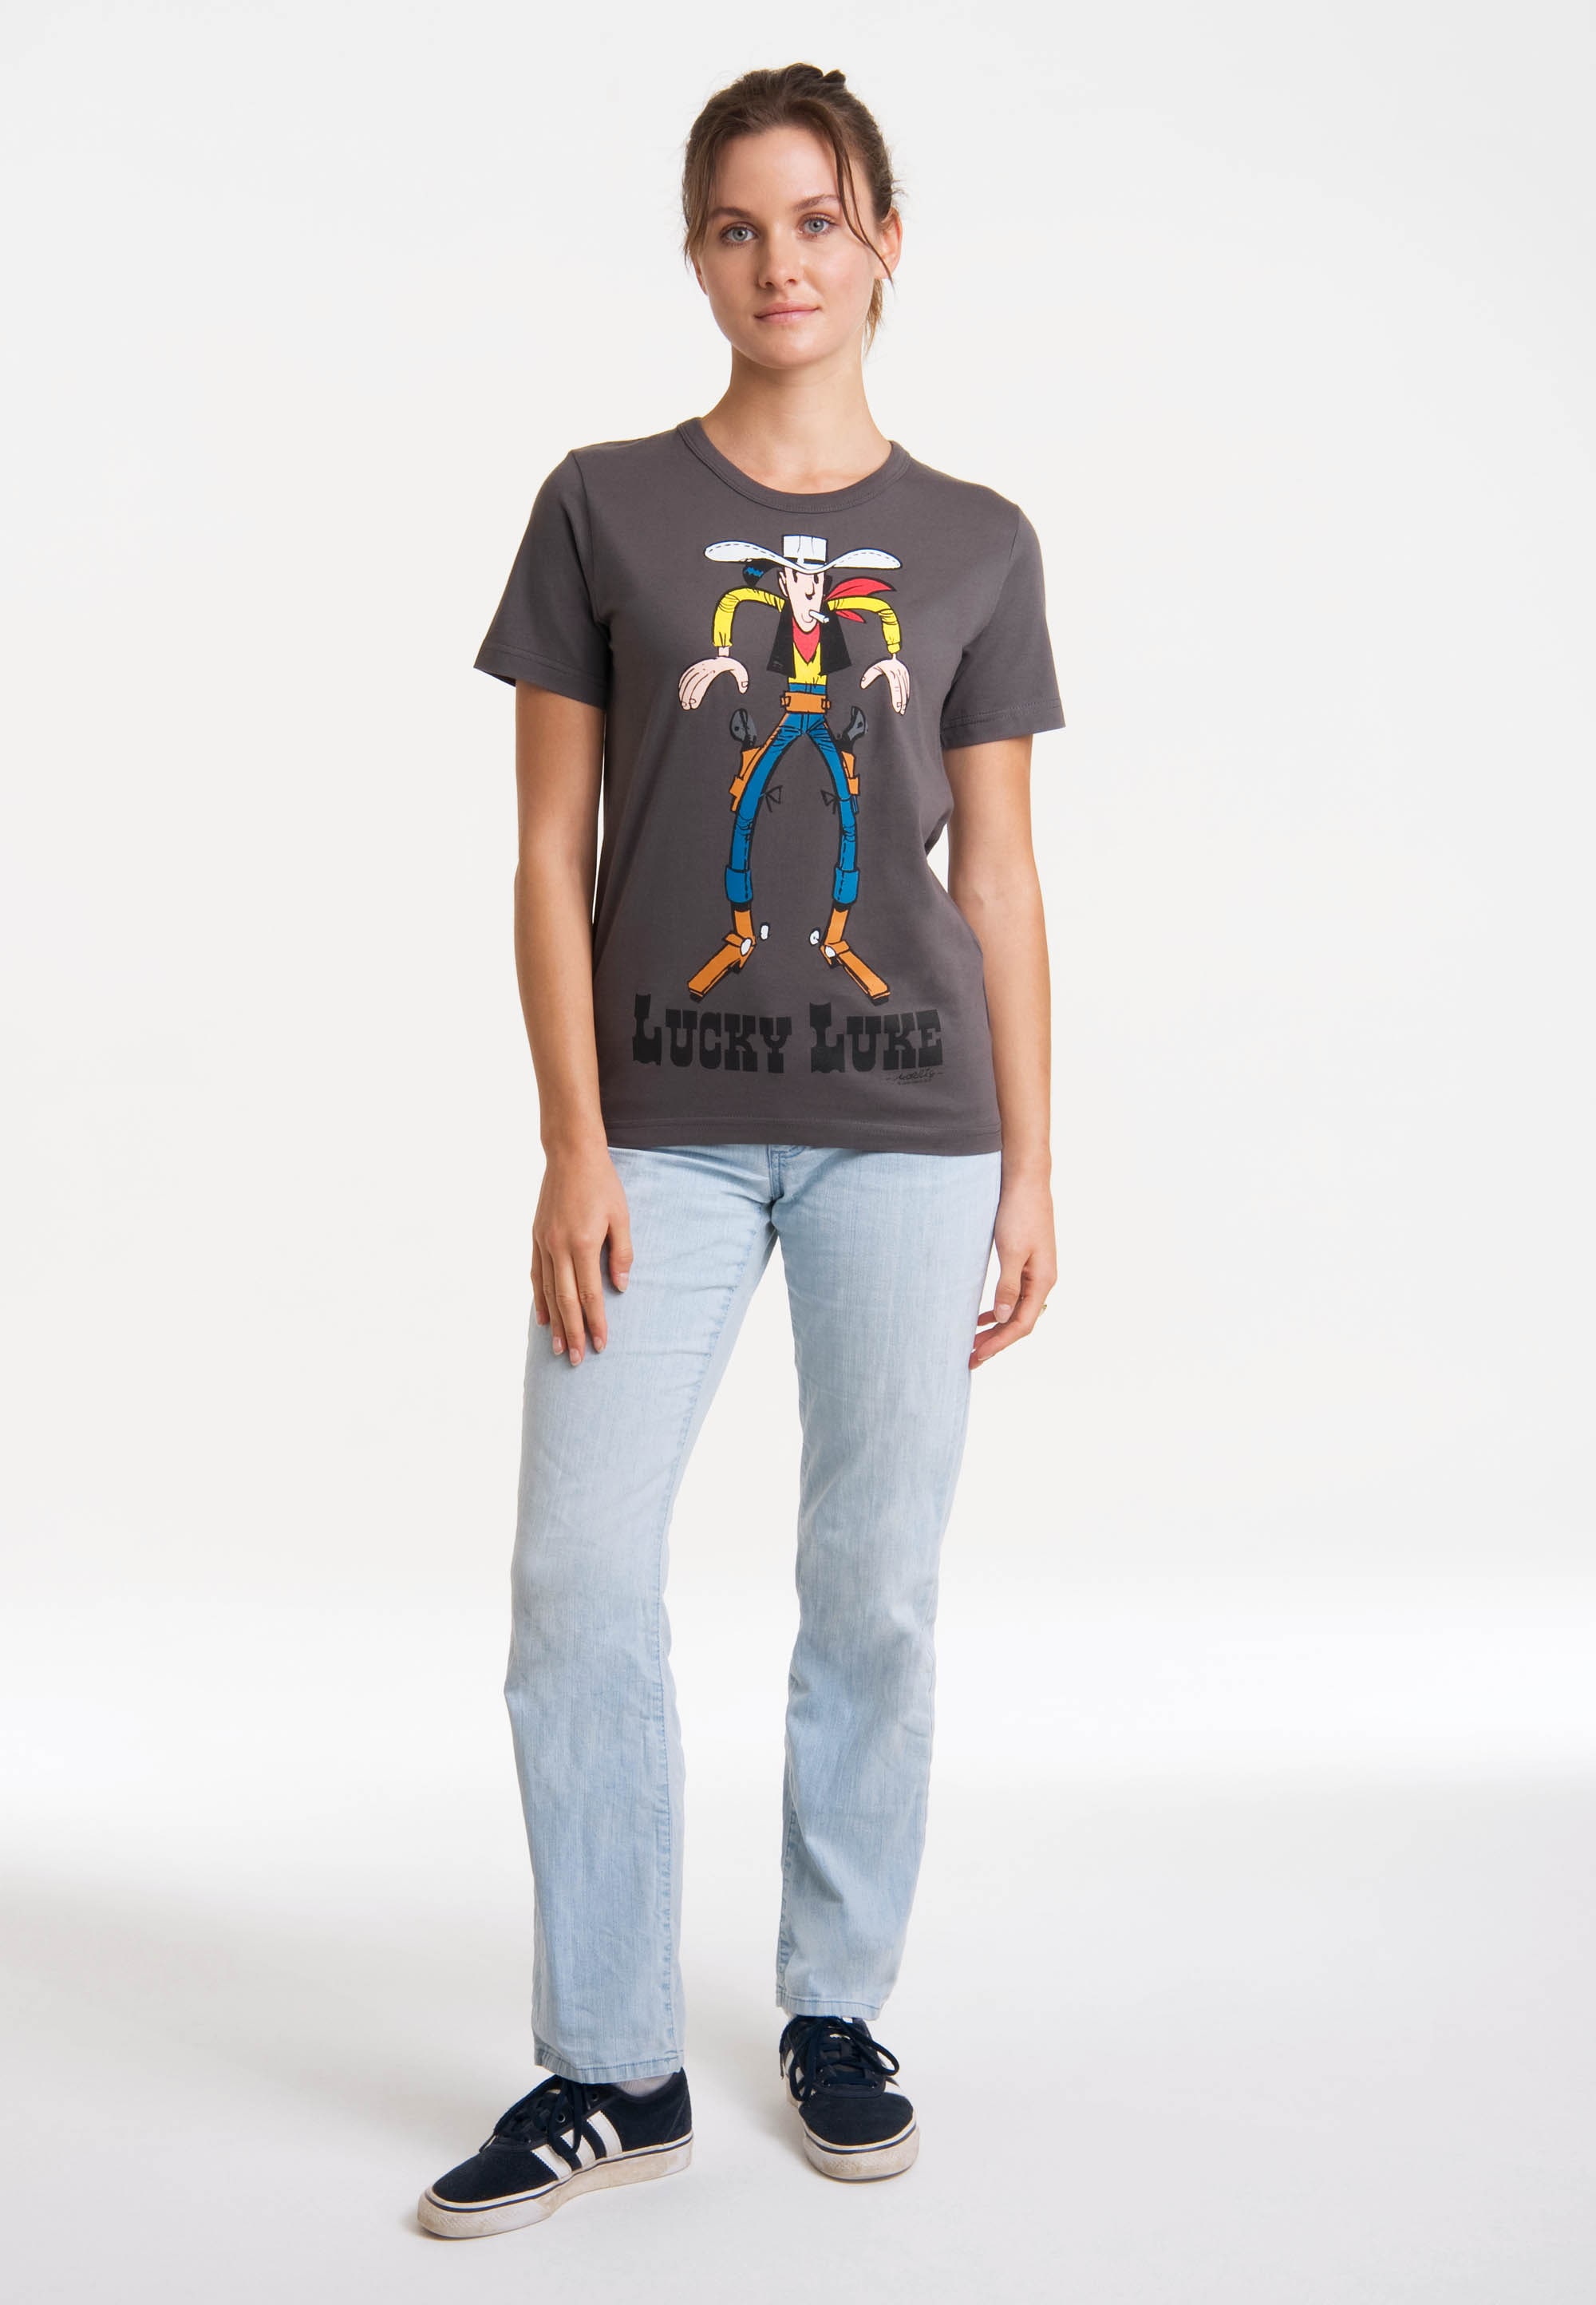 LOGOSHIRT T-Shirt "Lucky Luke Colt" günstig online kaufen